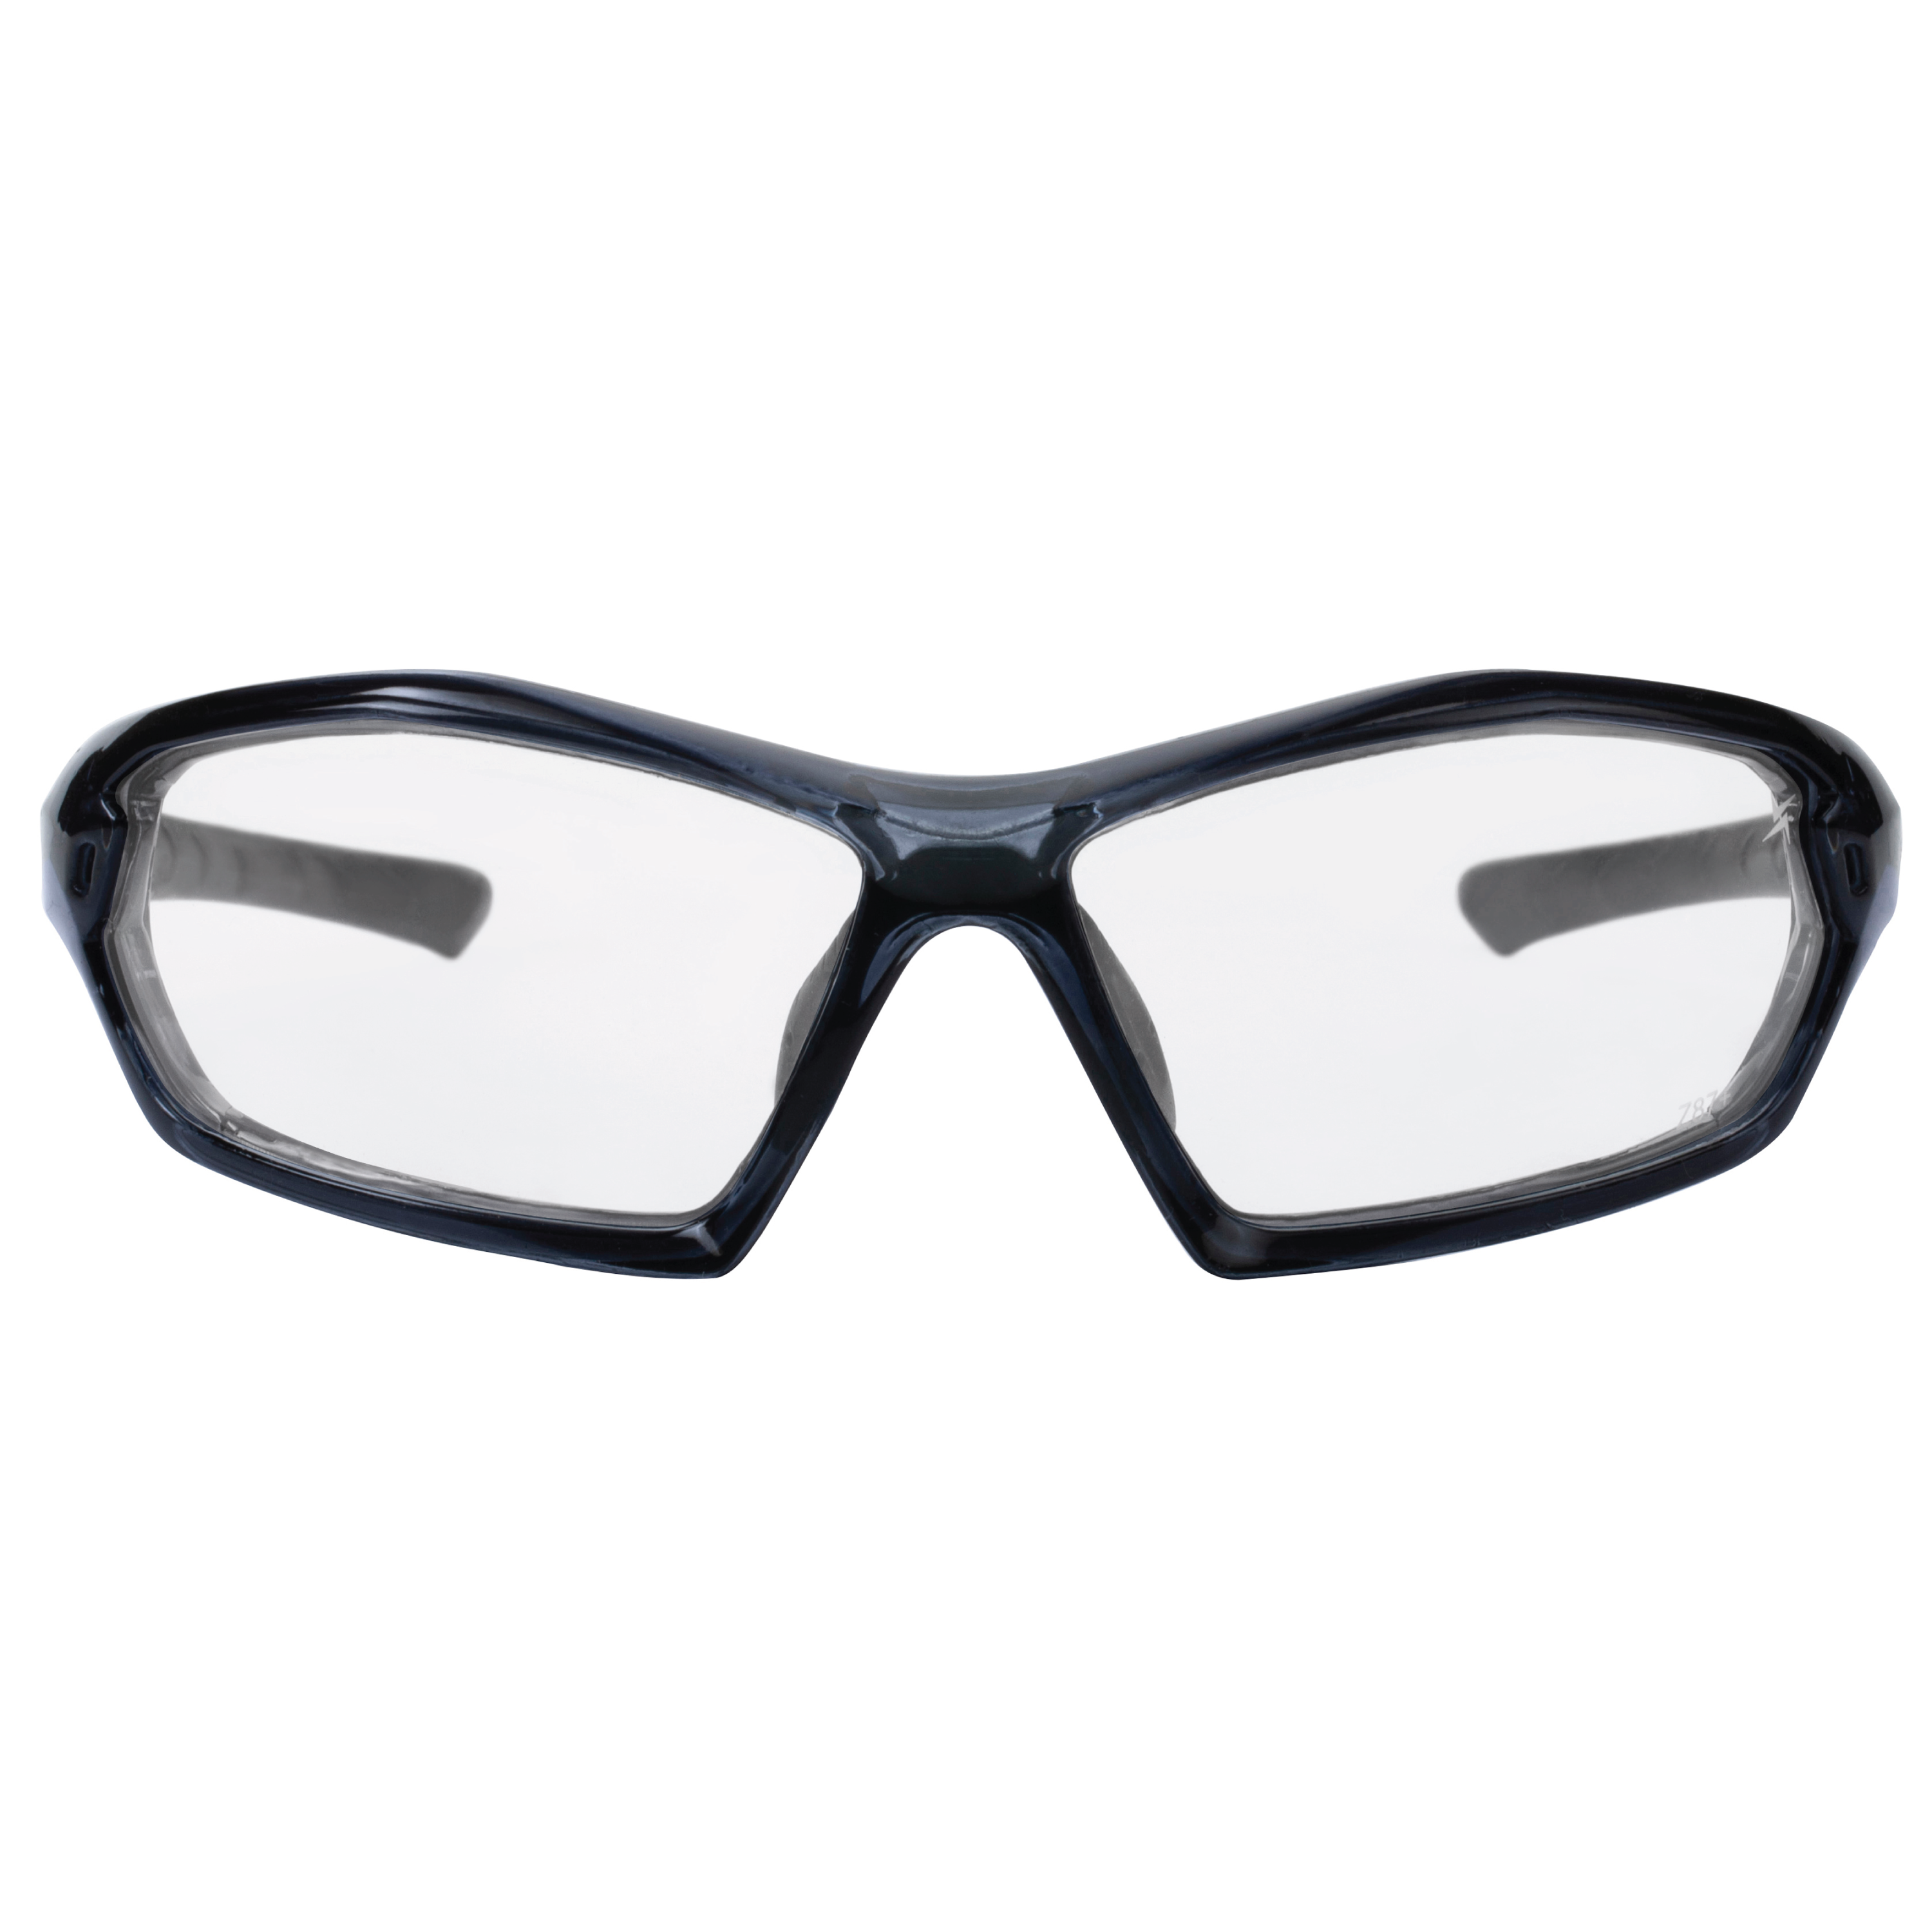 Clear Lens Translucent Black Frame Sport Safety Glasses with Adjustable Nose Pads.